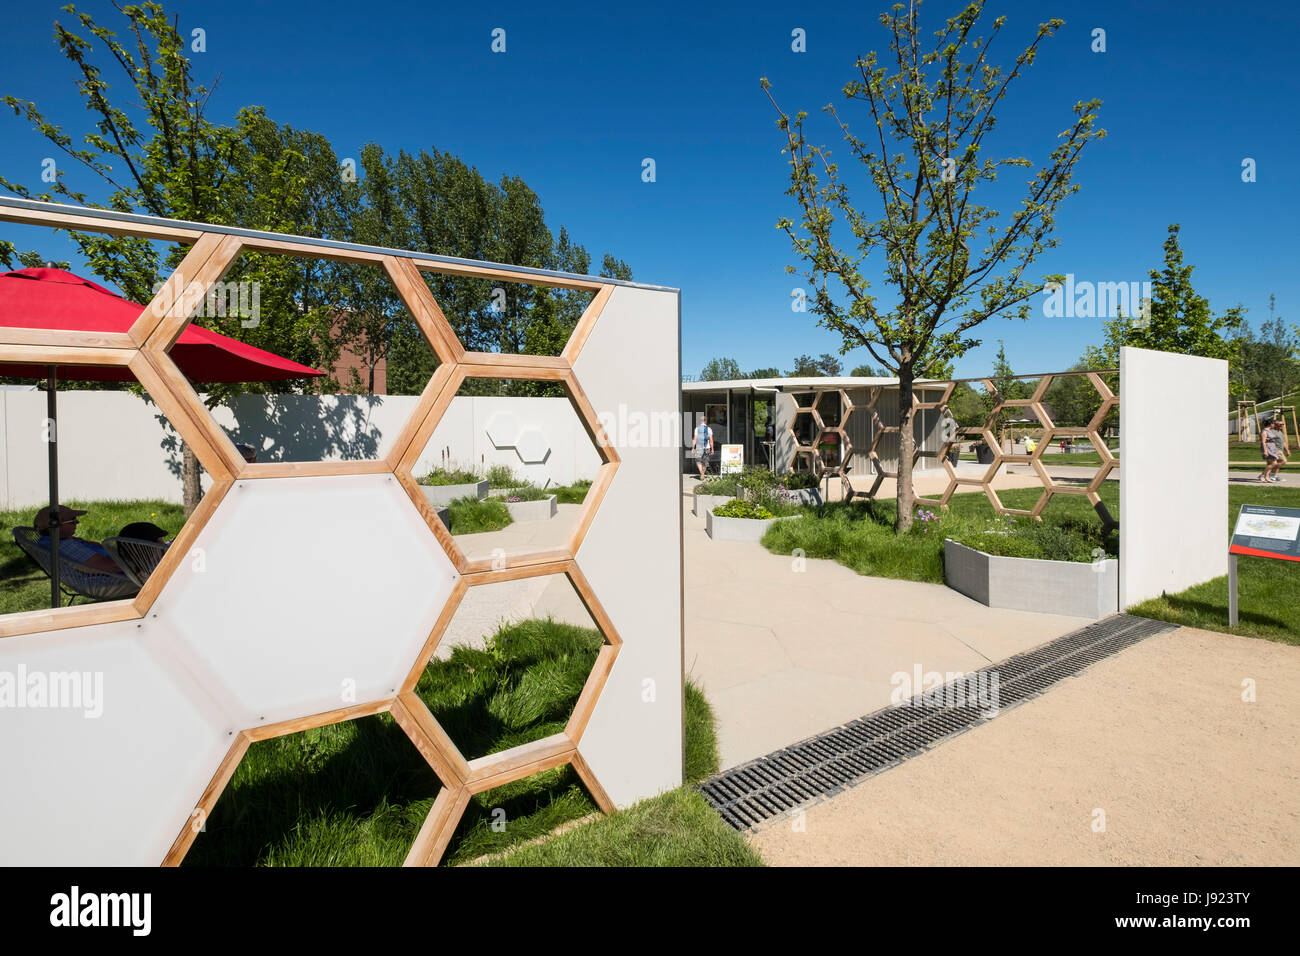 Le miel Suite Garden conçu pour l'apiculture, l'un des paramètres de jardin , des idées pour les jardins urbains, chez IGA 2017 Festival International de Jardins Banque D'Images